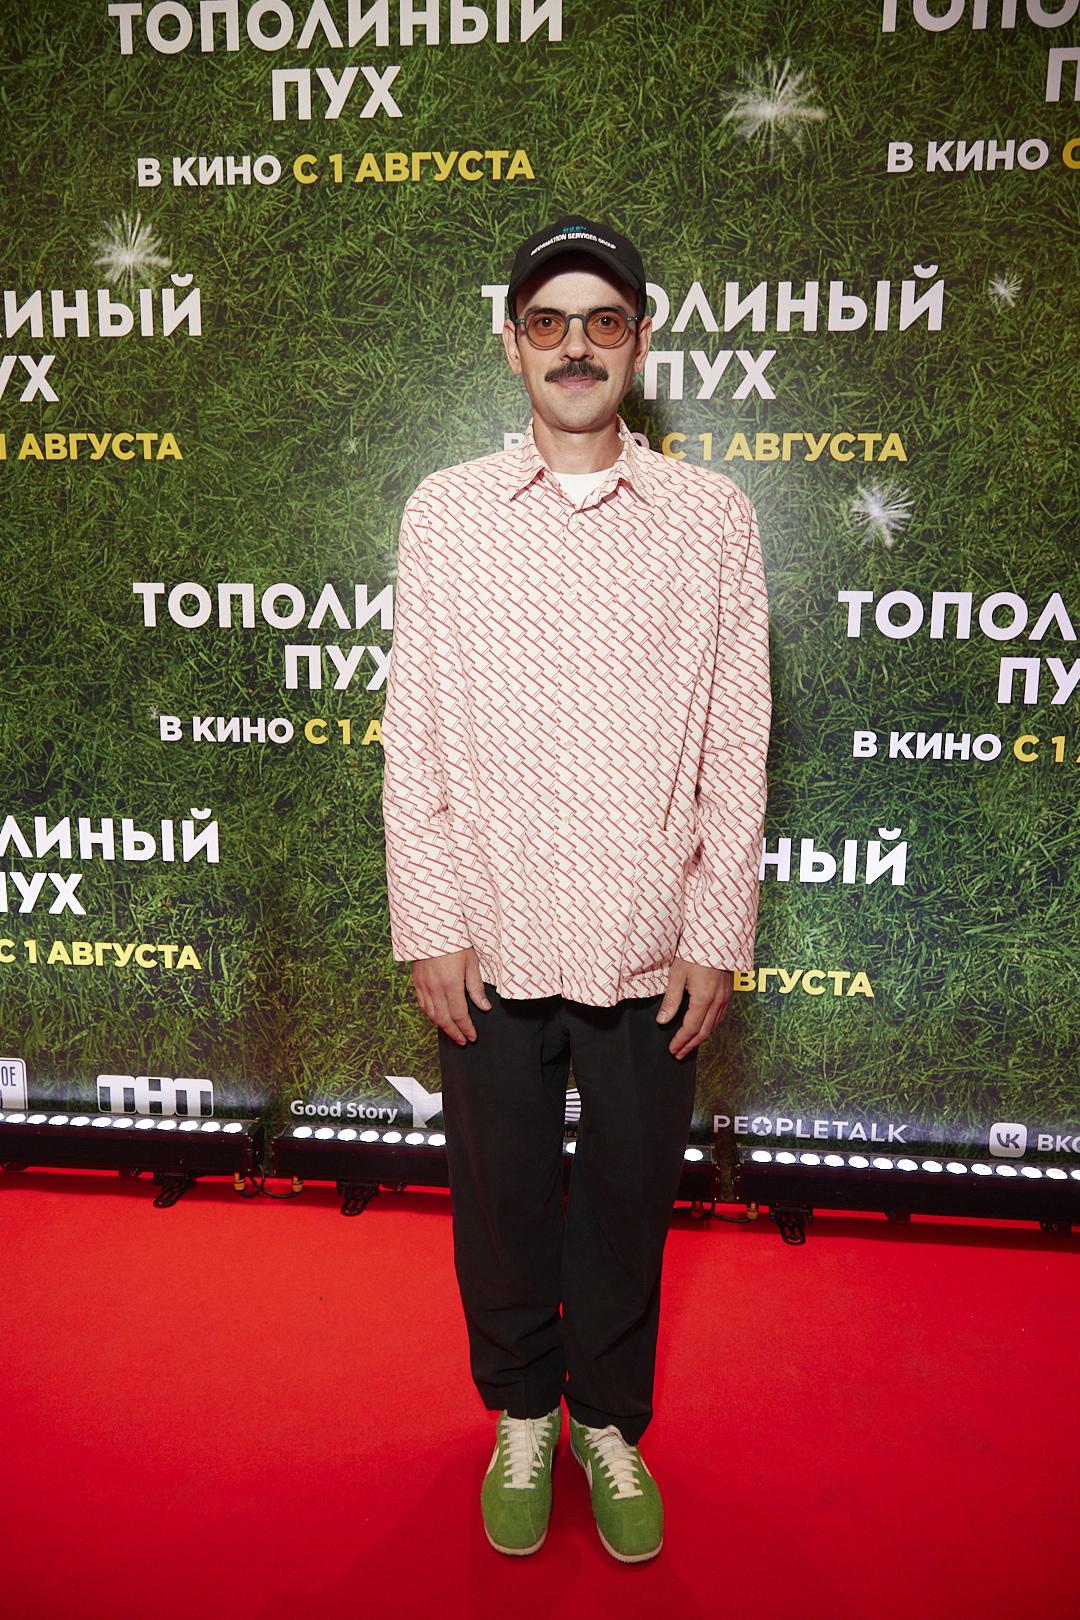 Тарасова пропустила красную дорожку, Лапенко застенчиво улыбался на премьере фильма «Тополиный пух»